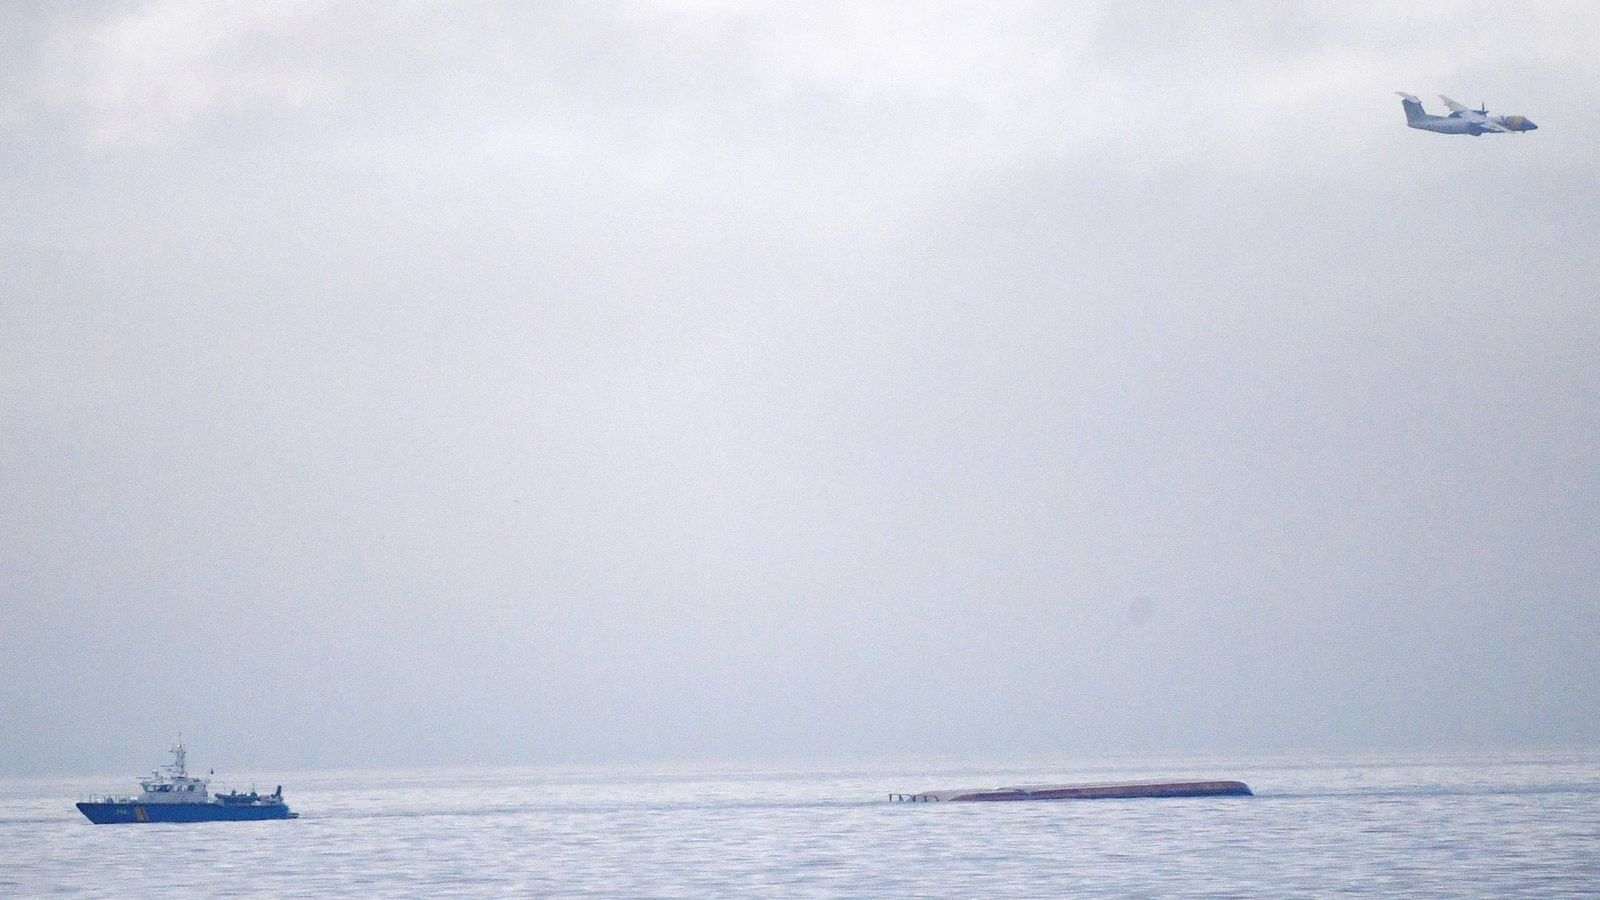 Kapal Kargo Tabrakan di Laut Baltik, 2 Orang Hilang